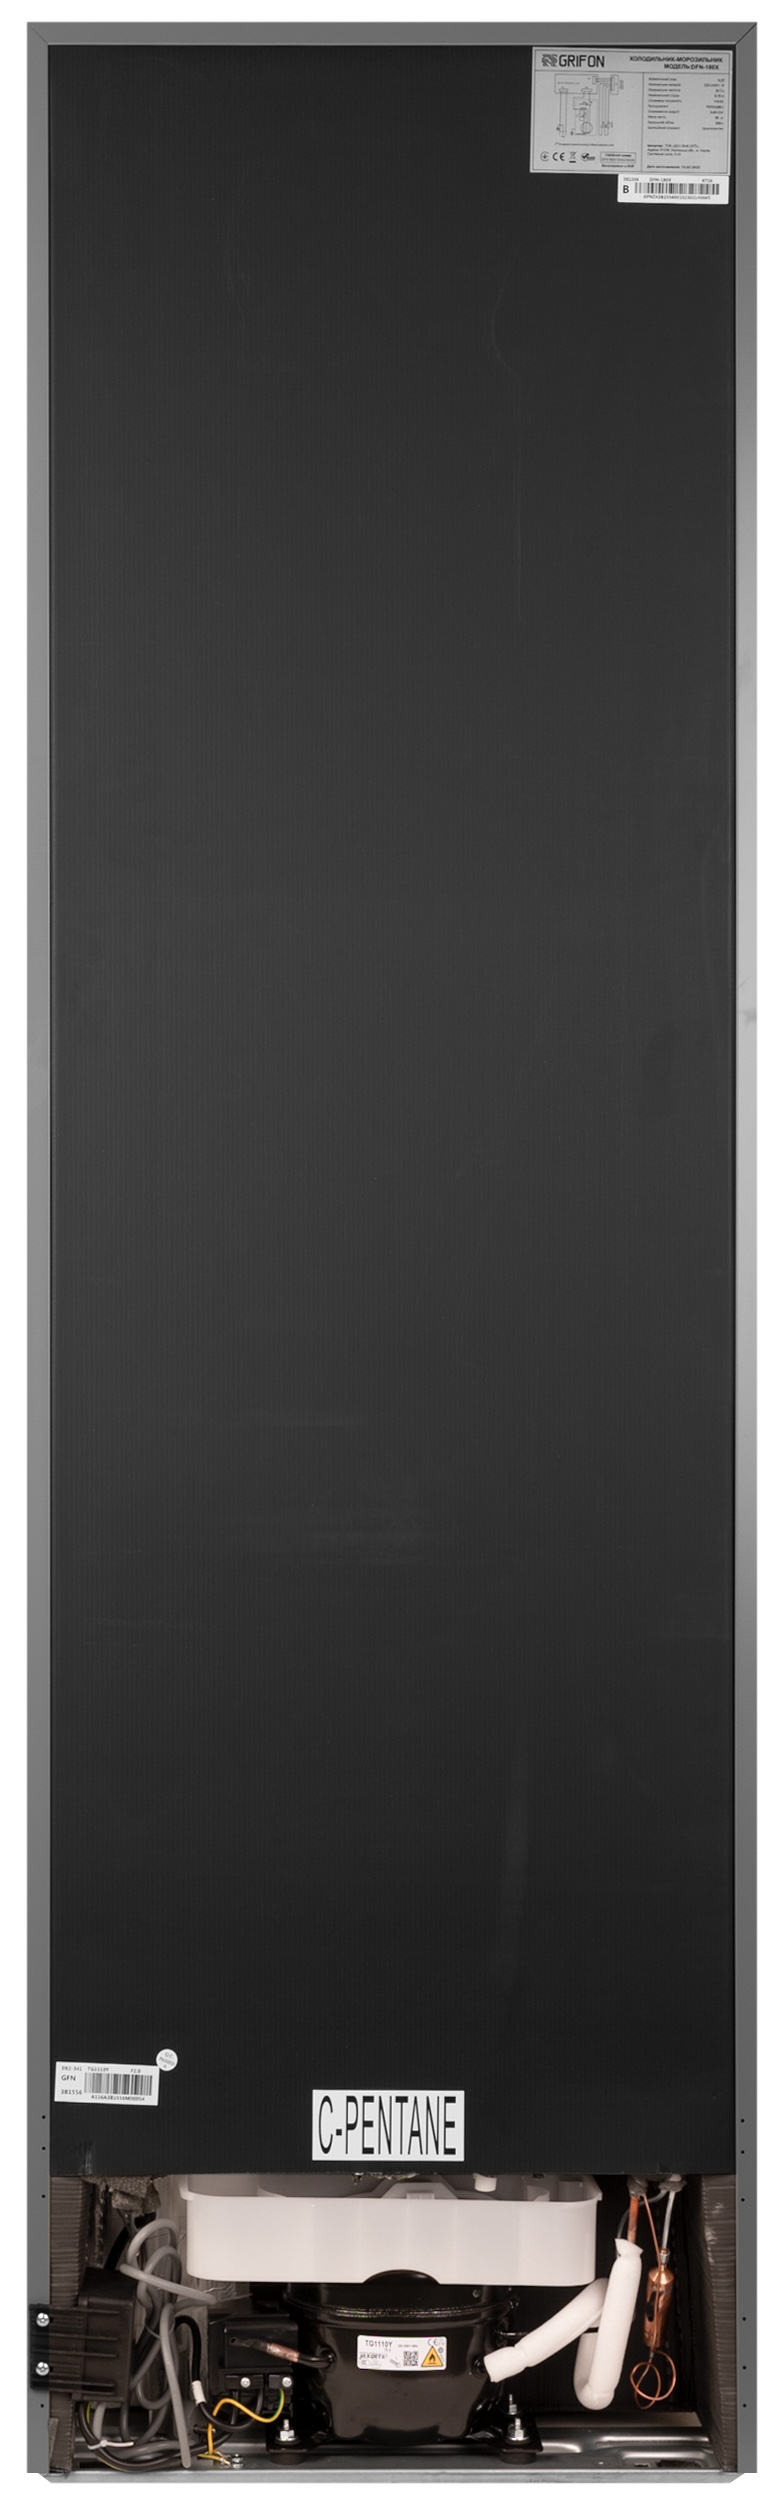 Холодильник Grifon DFN-180X інструкція - зображення 6